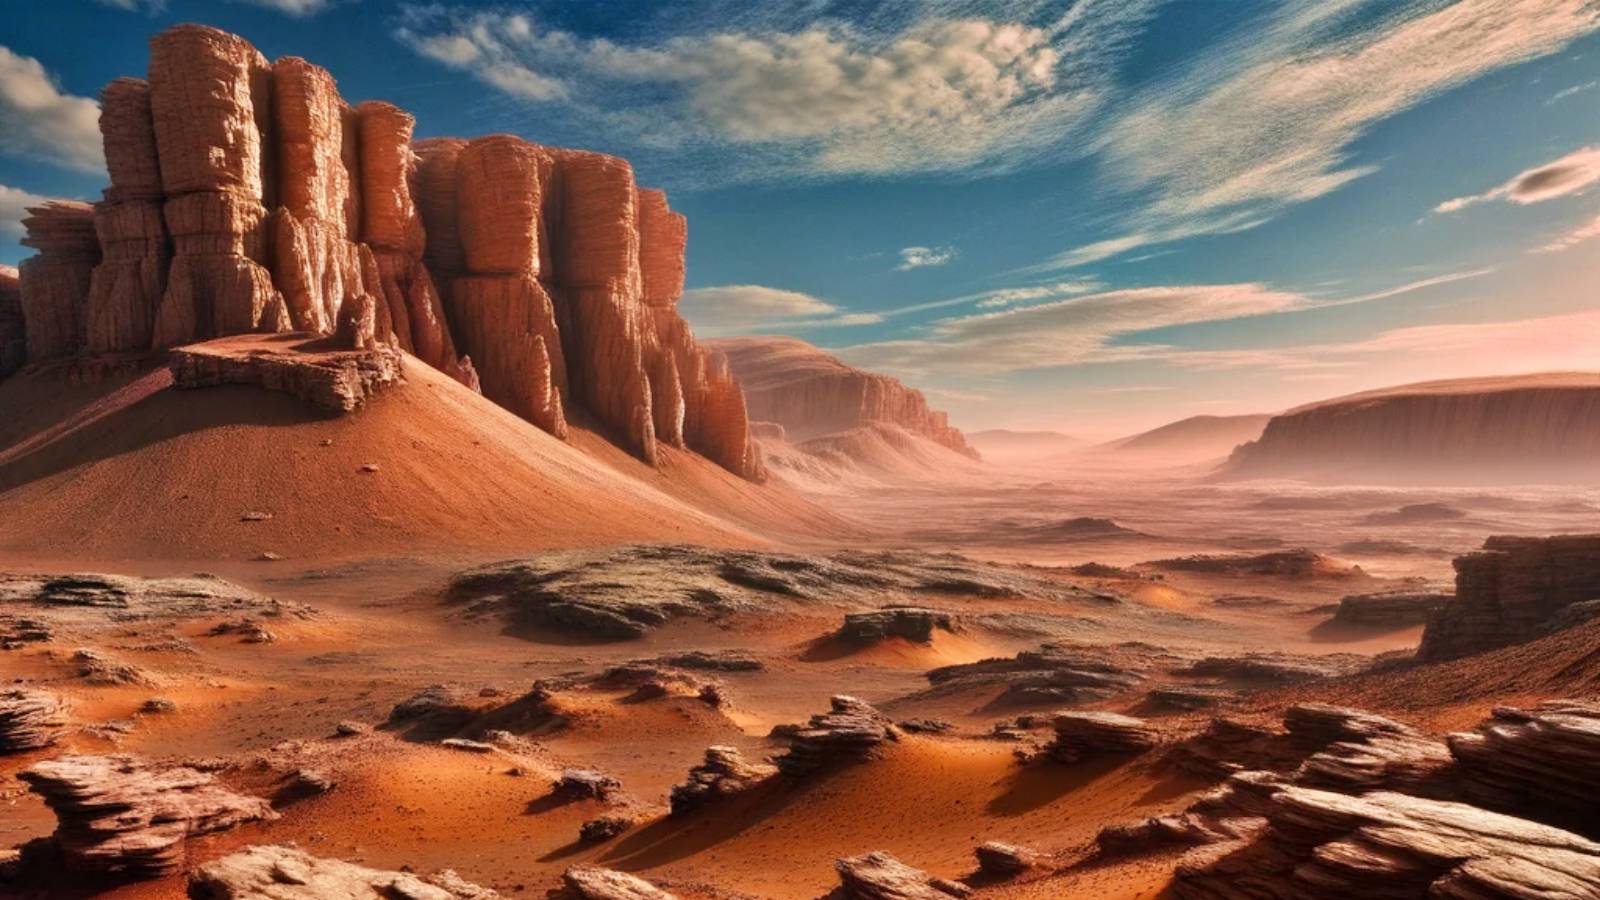 INCREÍBLE Discovery Planet Mars dice que los investigadores sorprendieron a los resultados